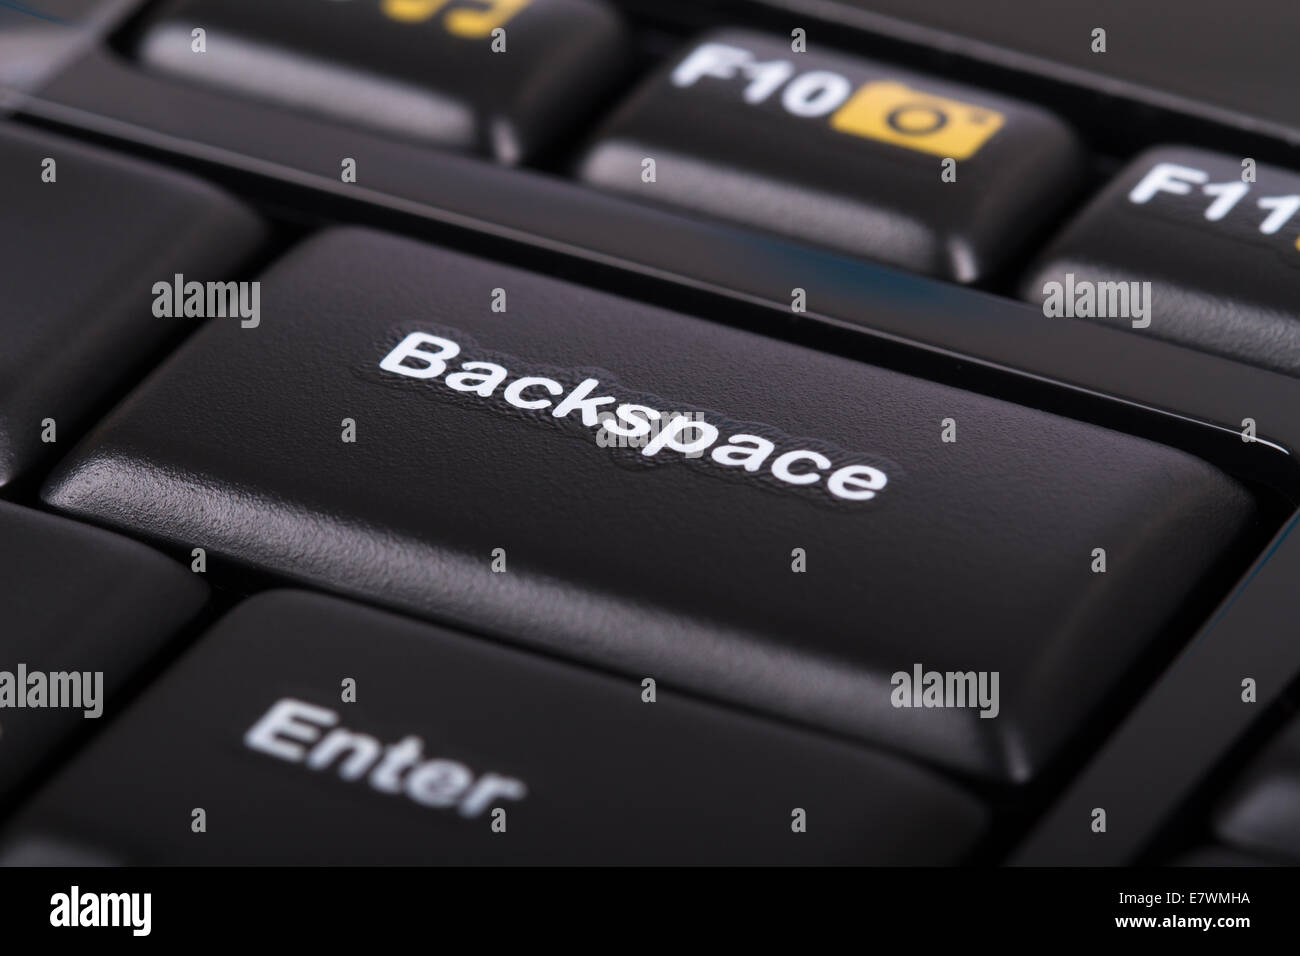 Бэкспейс на клавиатуре что это значит. Backspace на клавиатуре. Backspace на игровой клавиатуре. Backspace на клавиатуре хонор. Контрл плюс бекспейс.